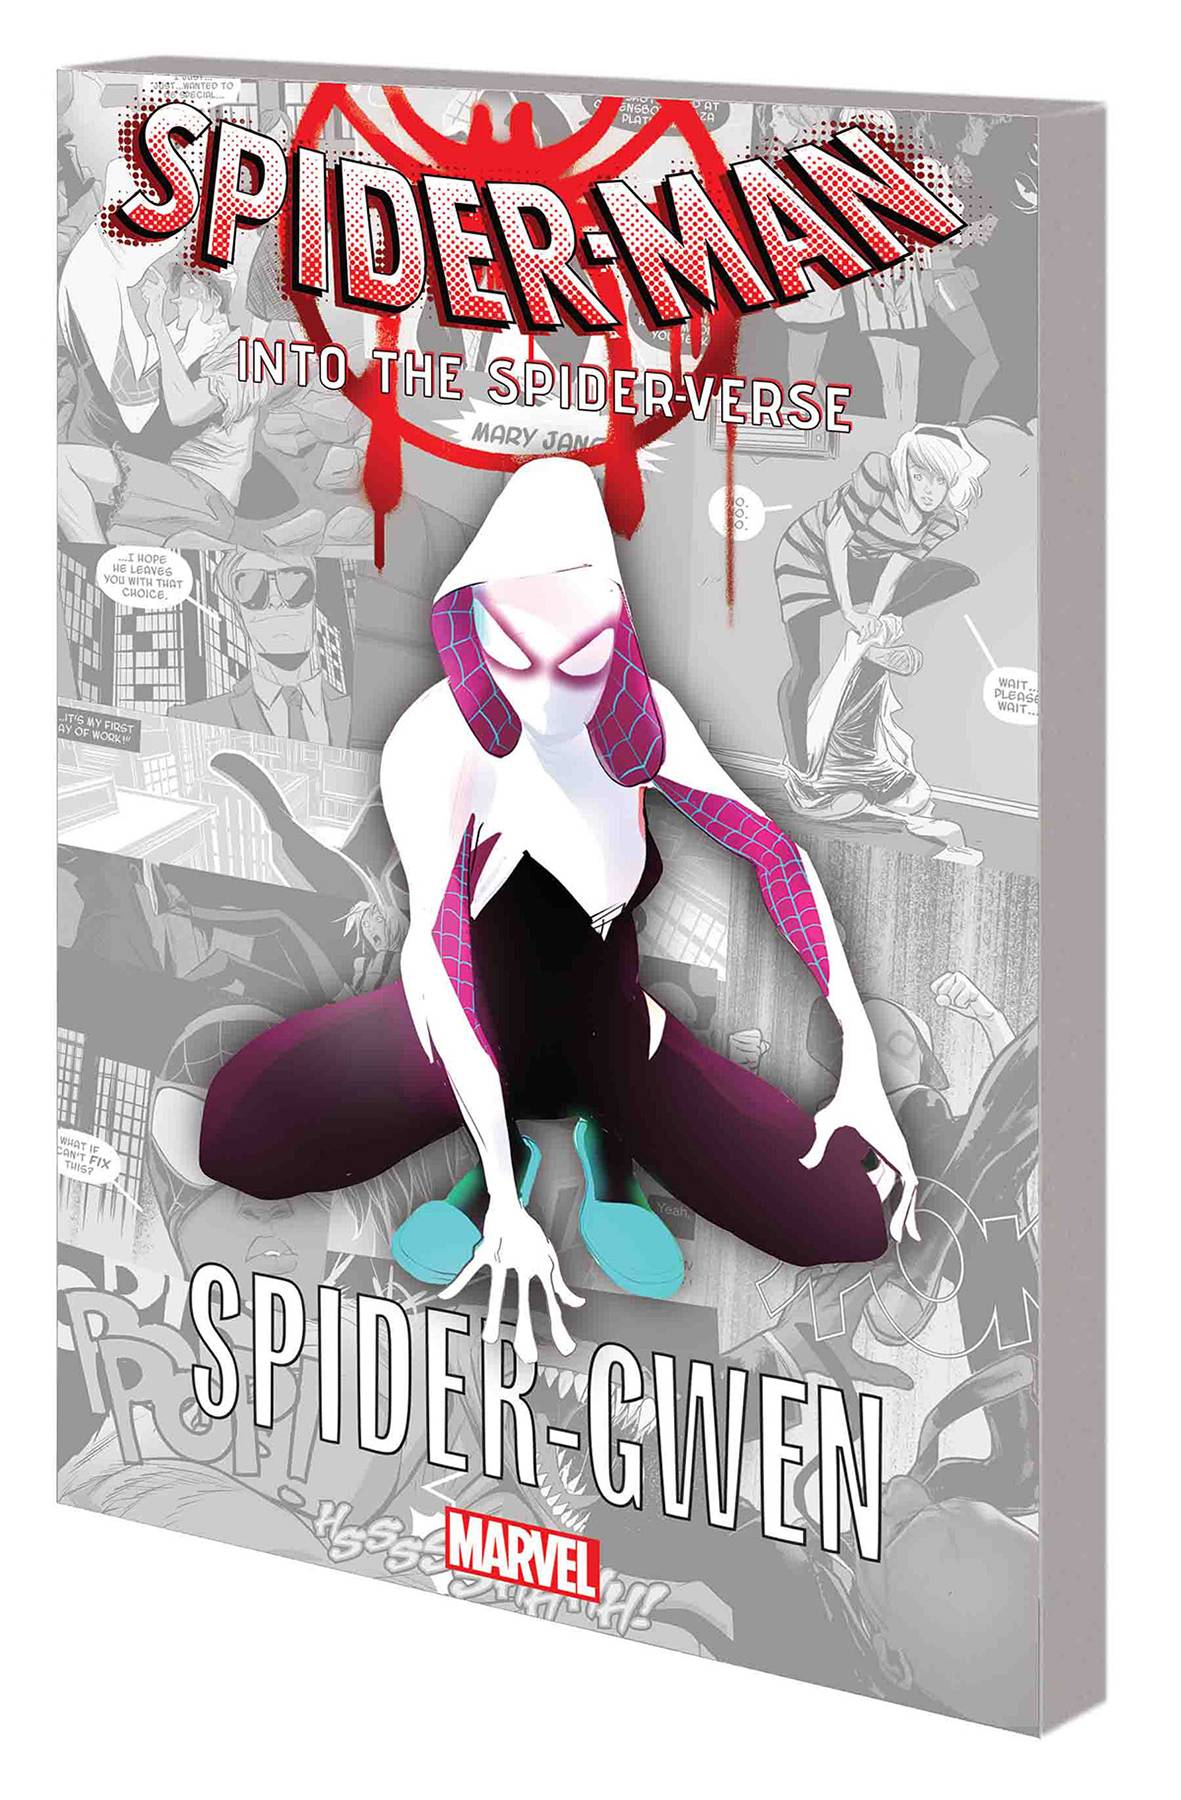 Spider-Man Spider-Verse Spider-Gwen